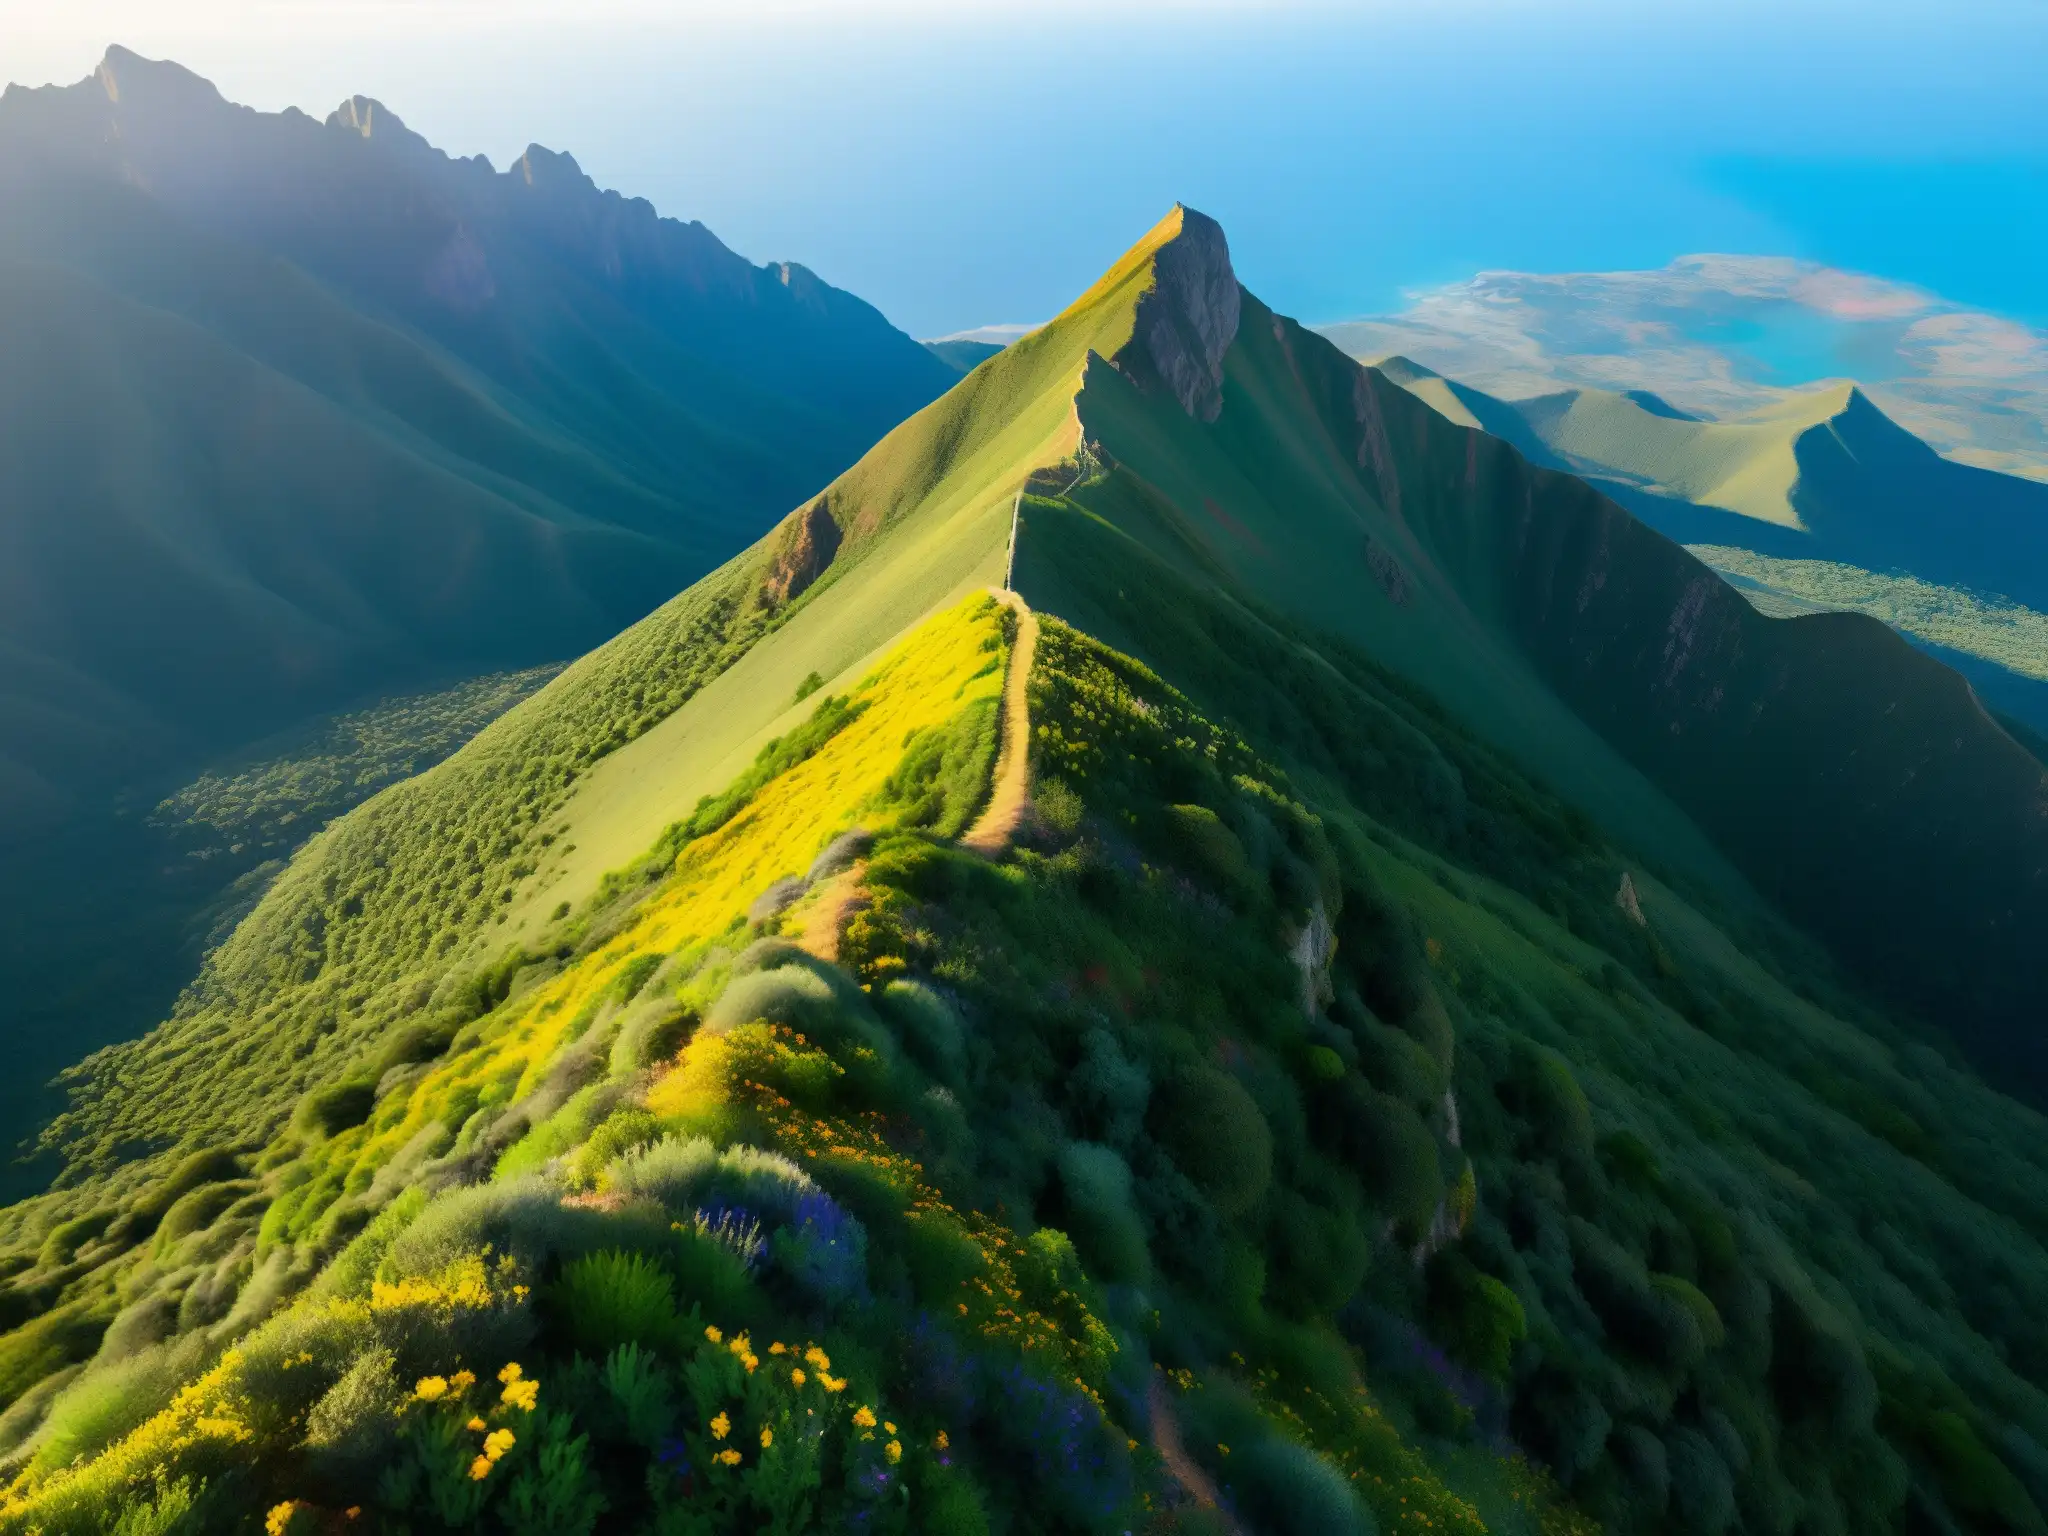 Culto al Cerro de las Culebras: majestuosa vista aérea de la montaña envuelta en misterio y belleza natural, con sendero serpenteante y hikers